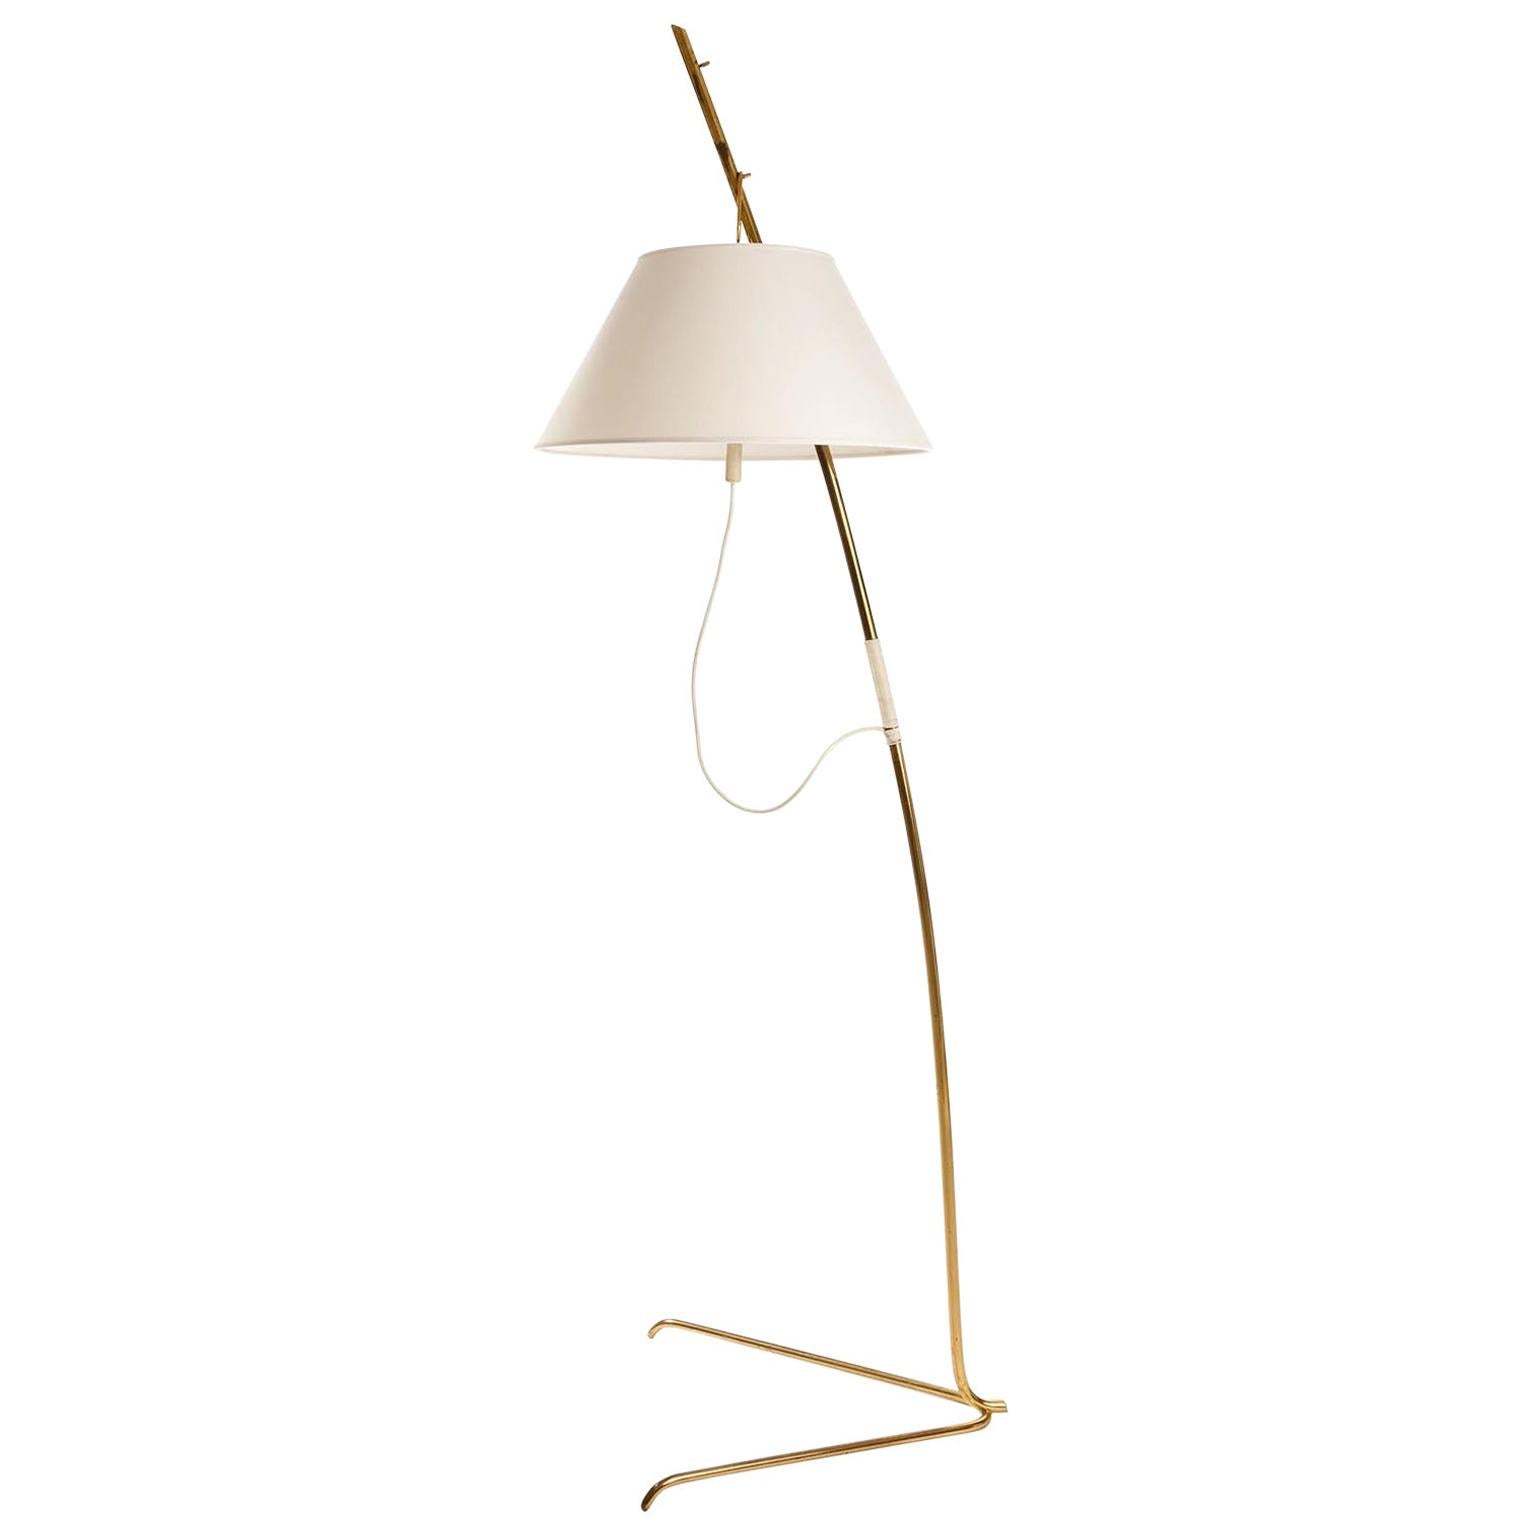 Kalmar Brass Floor Lamp 'Cavador' No. 2098, Height Adjustable, 1960, 1 of 2 For Sale